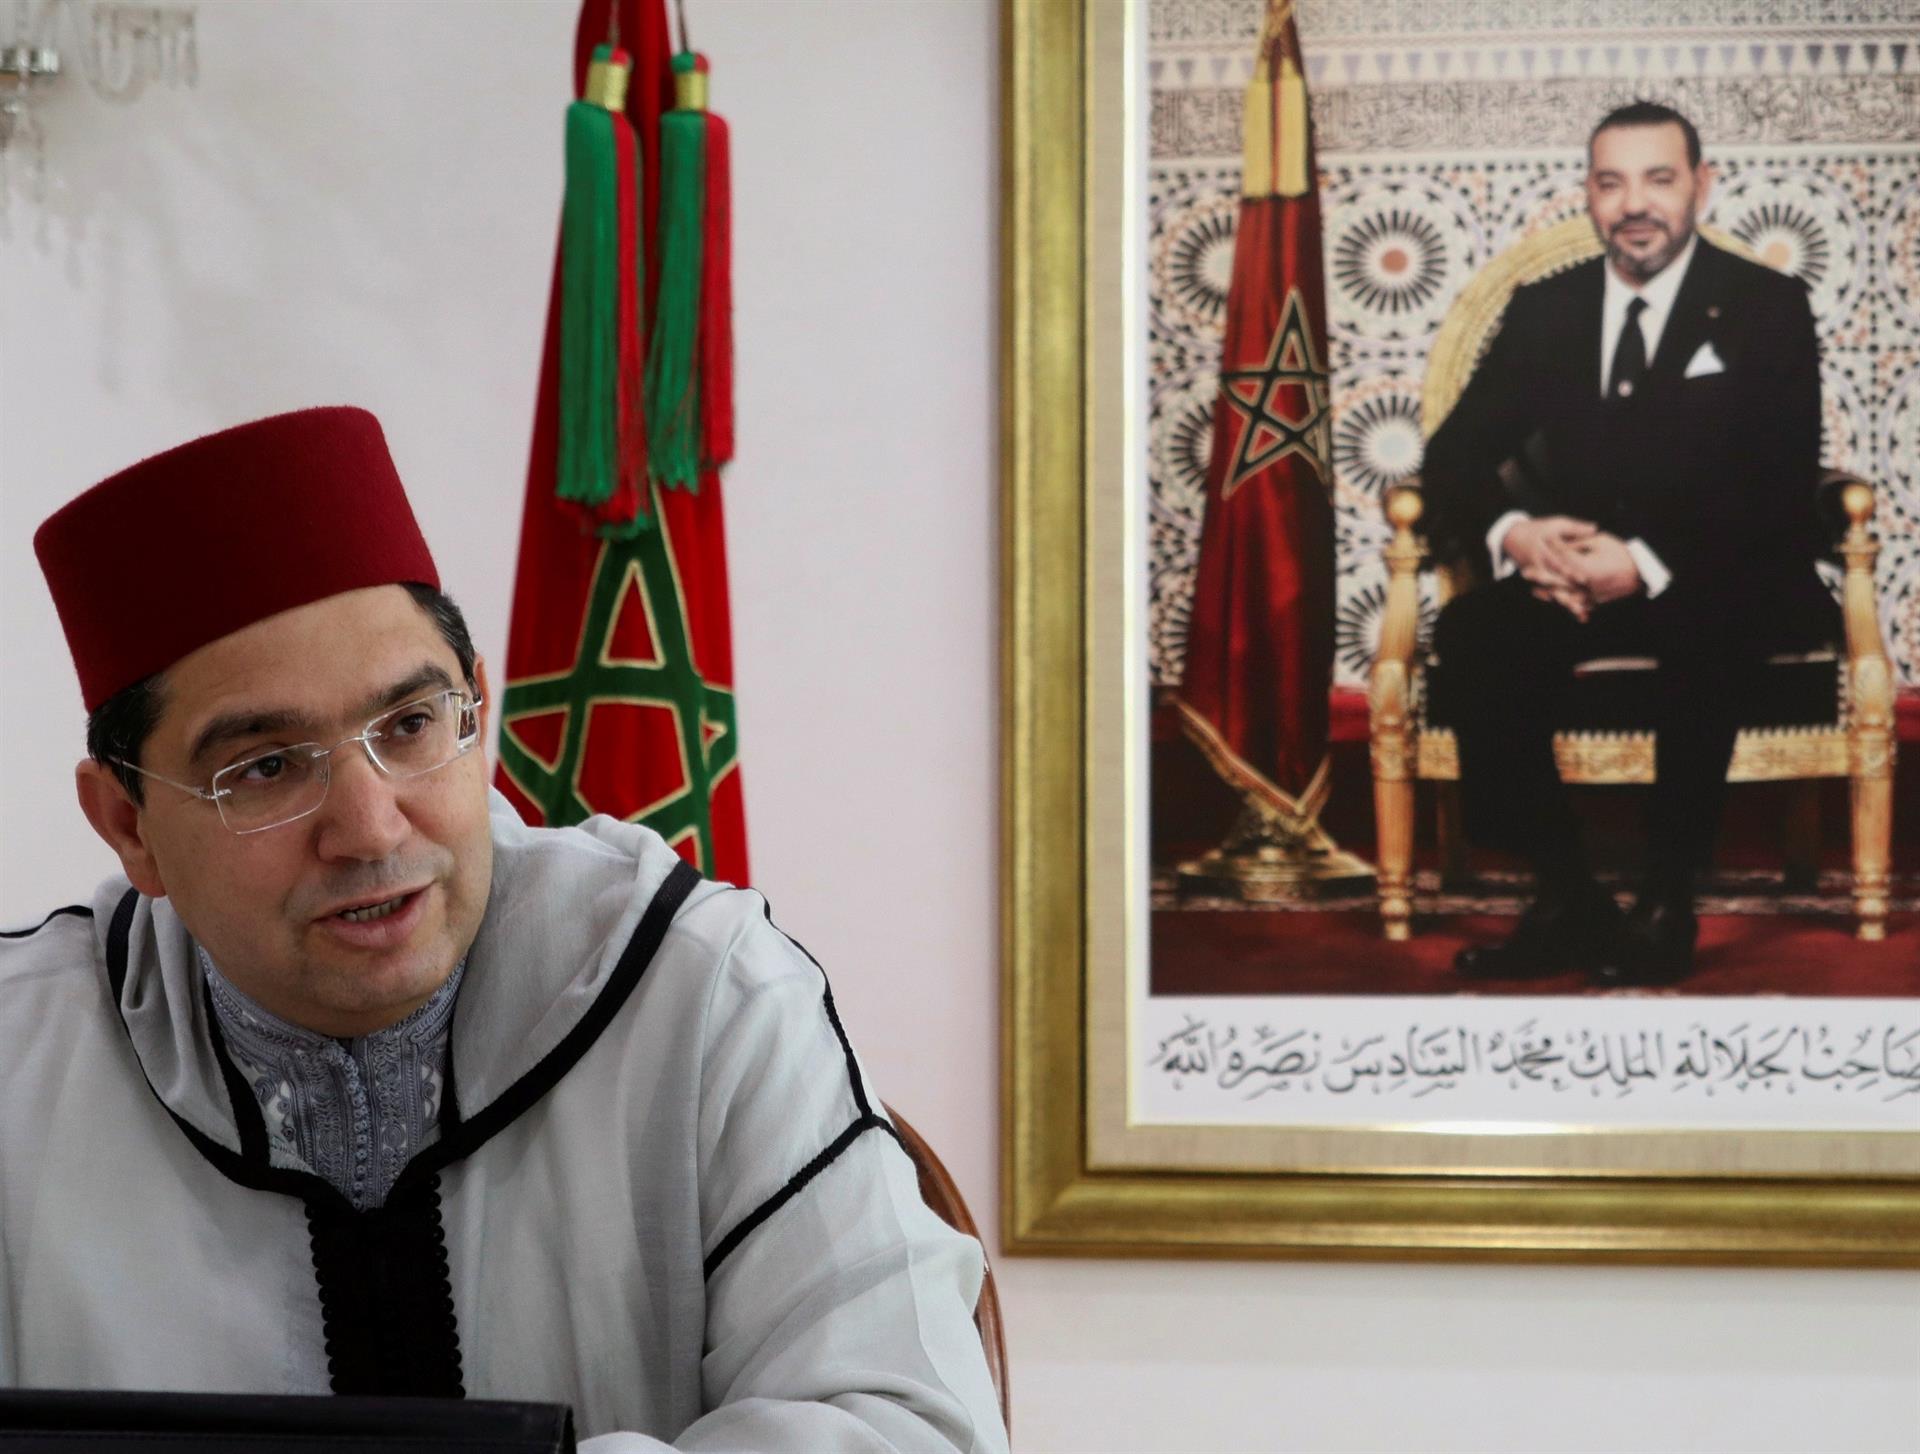 Marruecos aprieta a España: "¿Sacrificarán nuestra relación por el Polisario?"